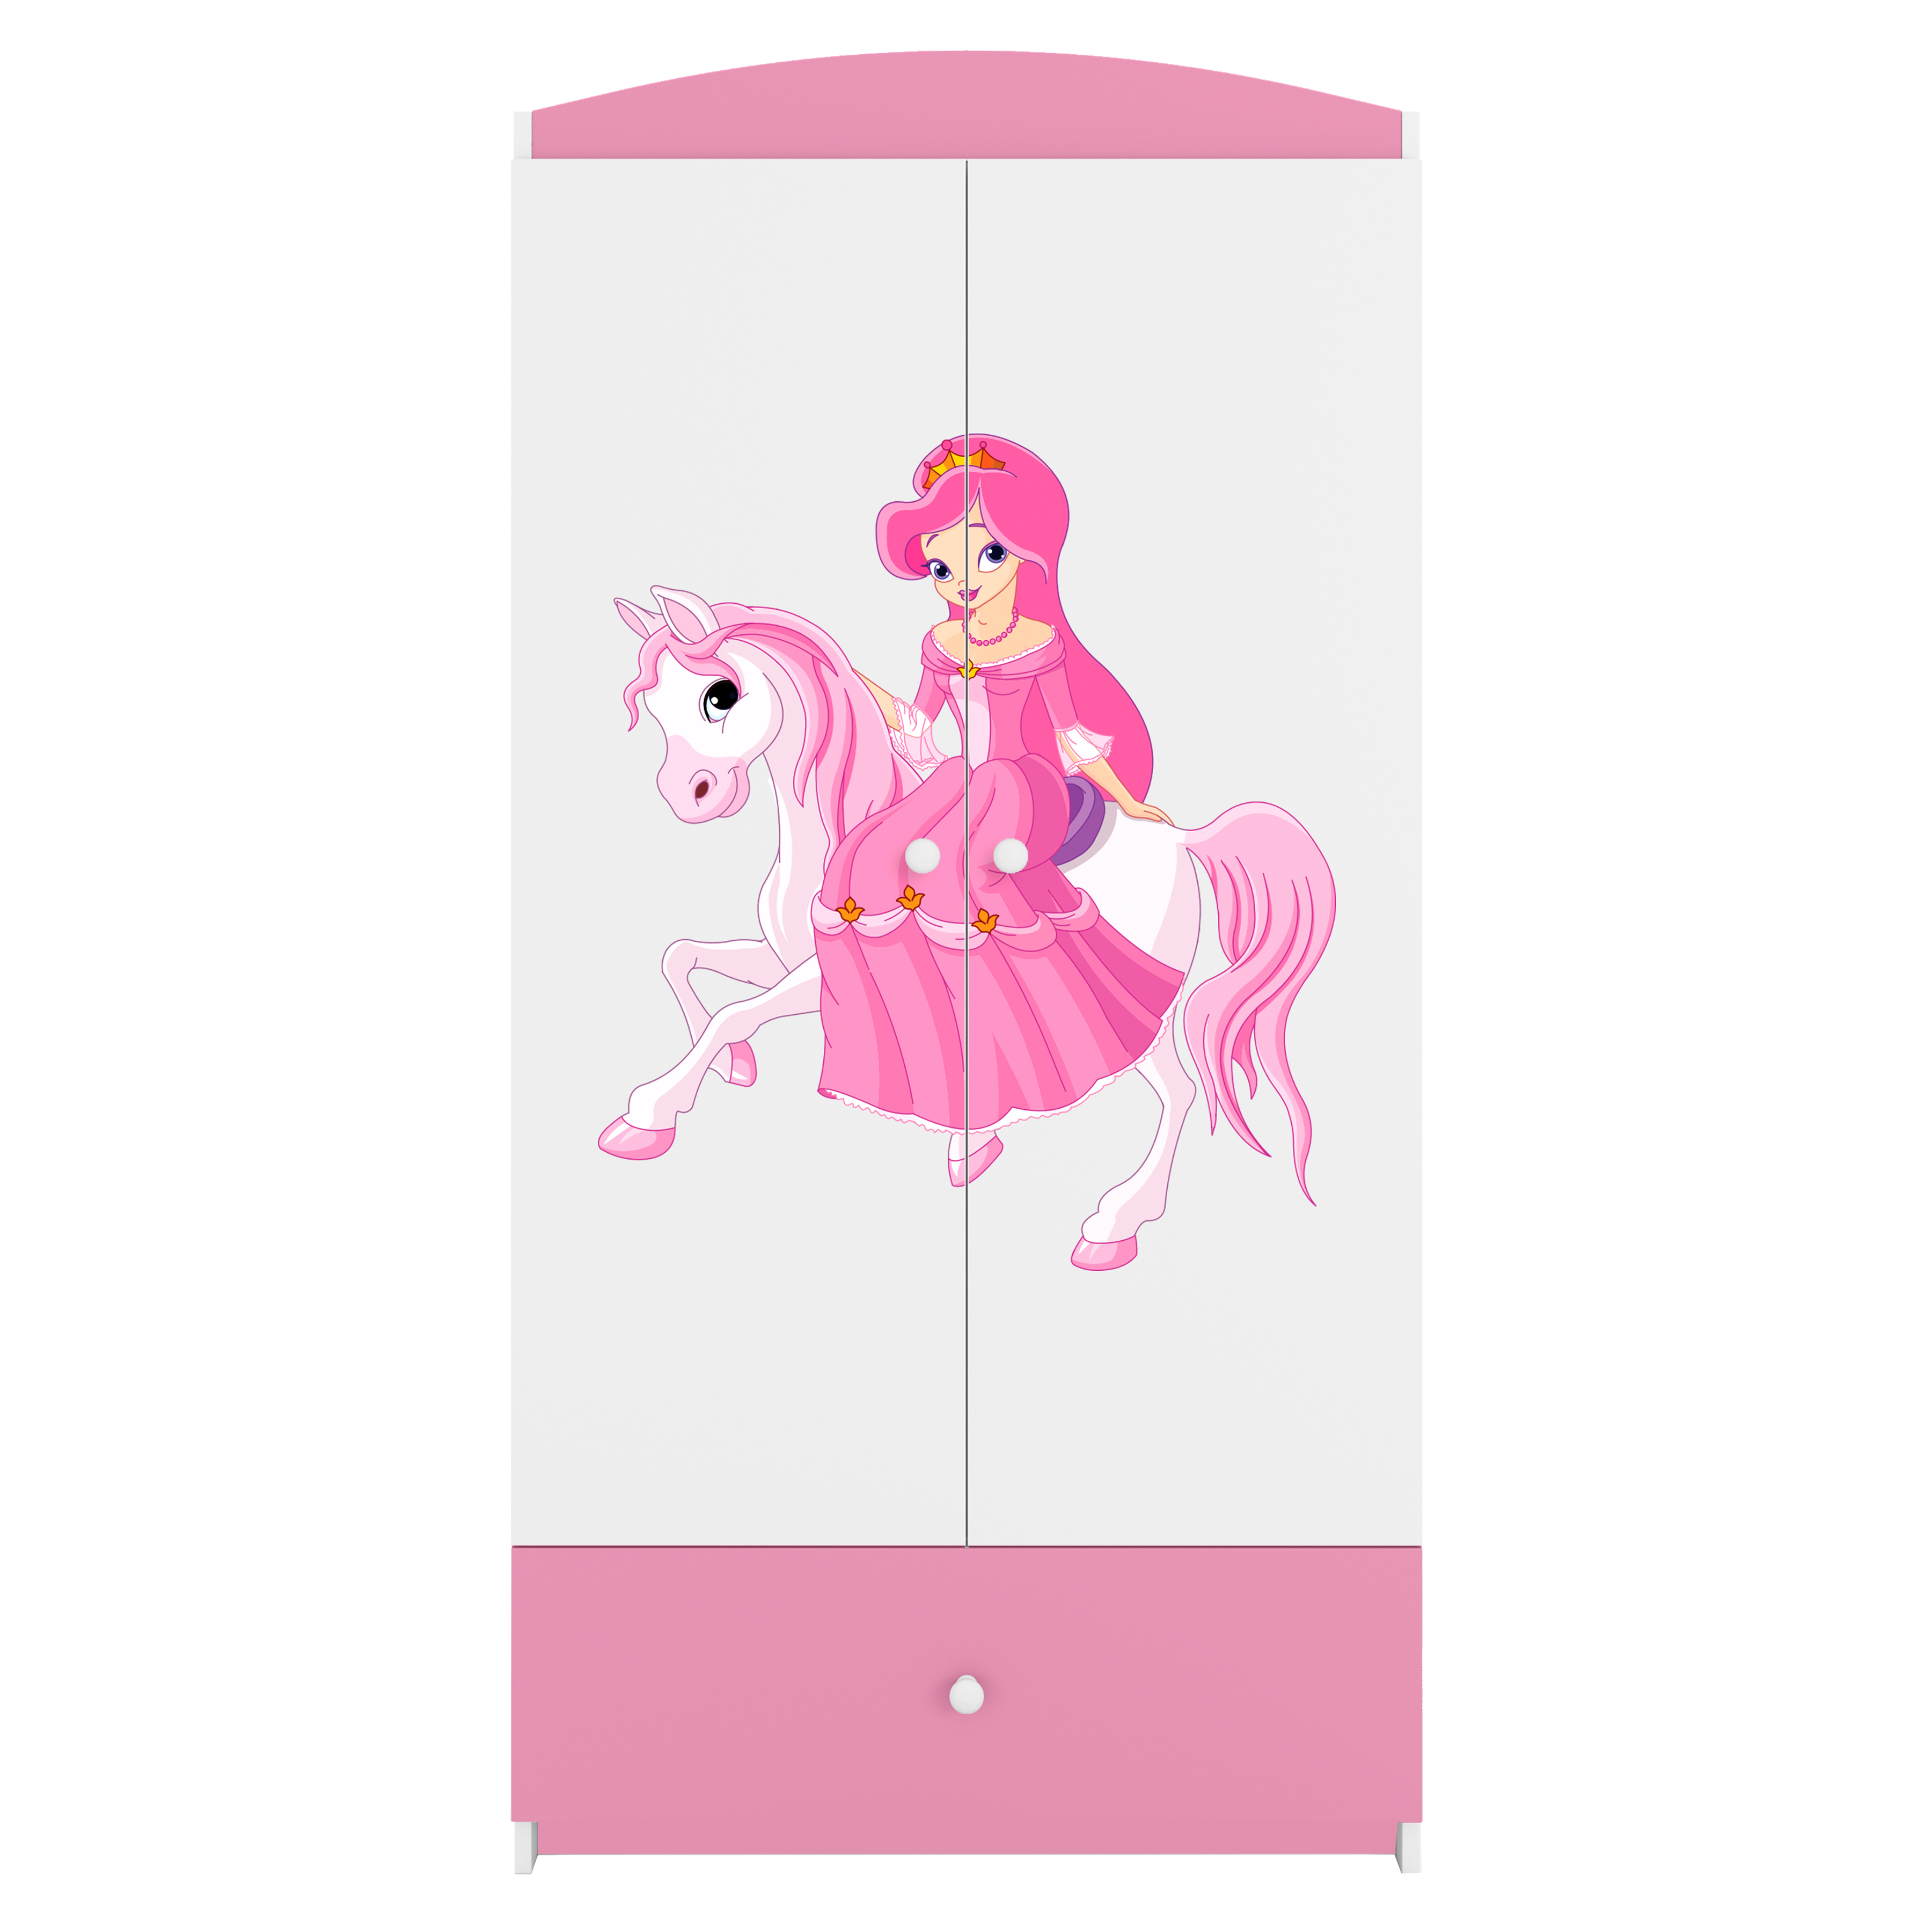 12: Babydreams garderobeskab til børn m. prinsesse på hest, m. 2 låger, 1 skuffe - hvid/lyserød laminat